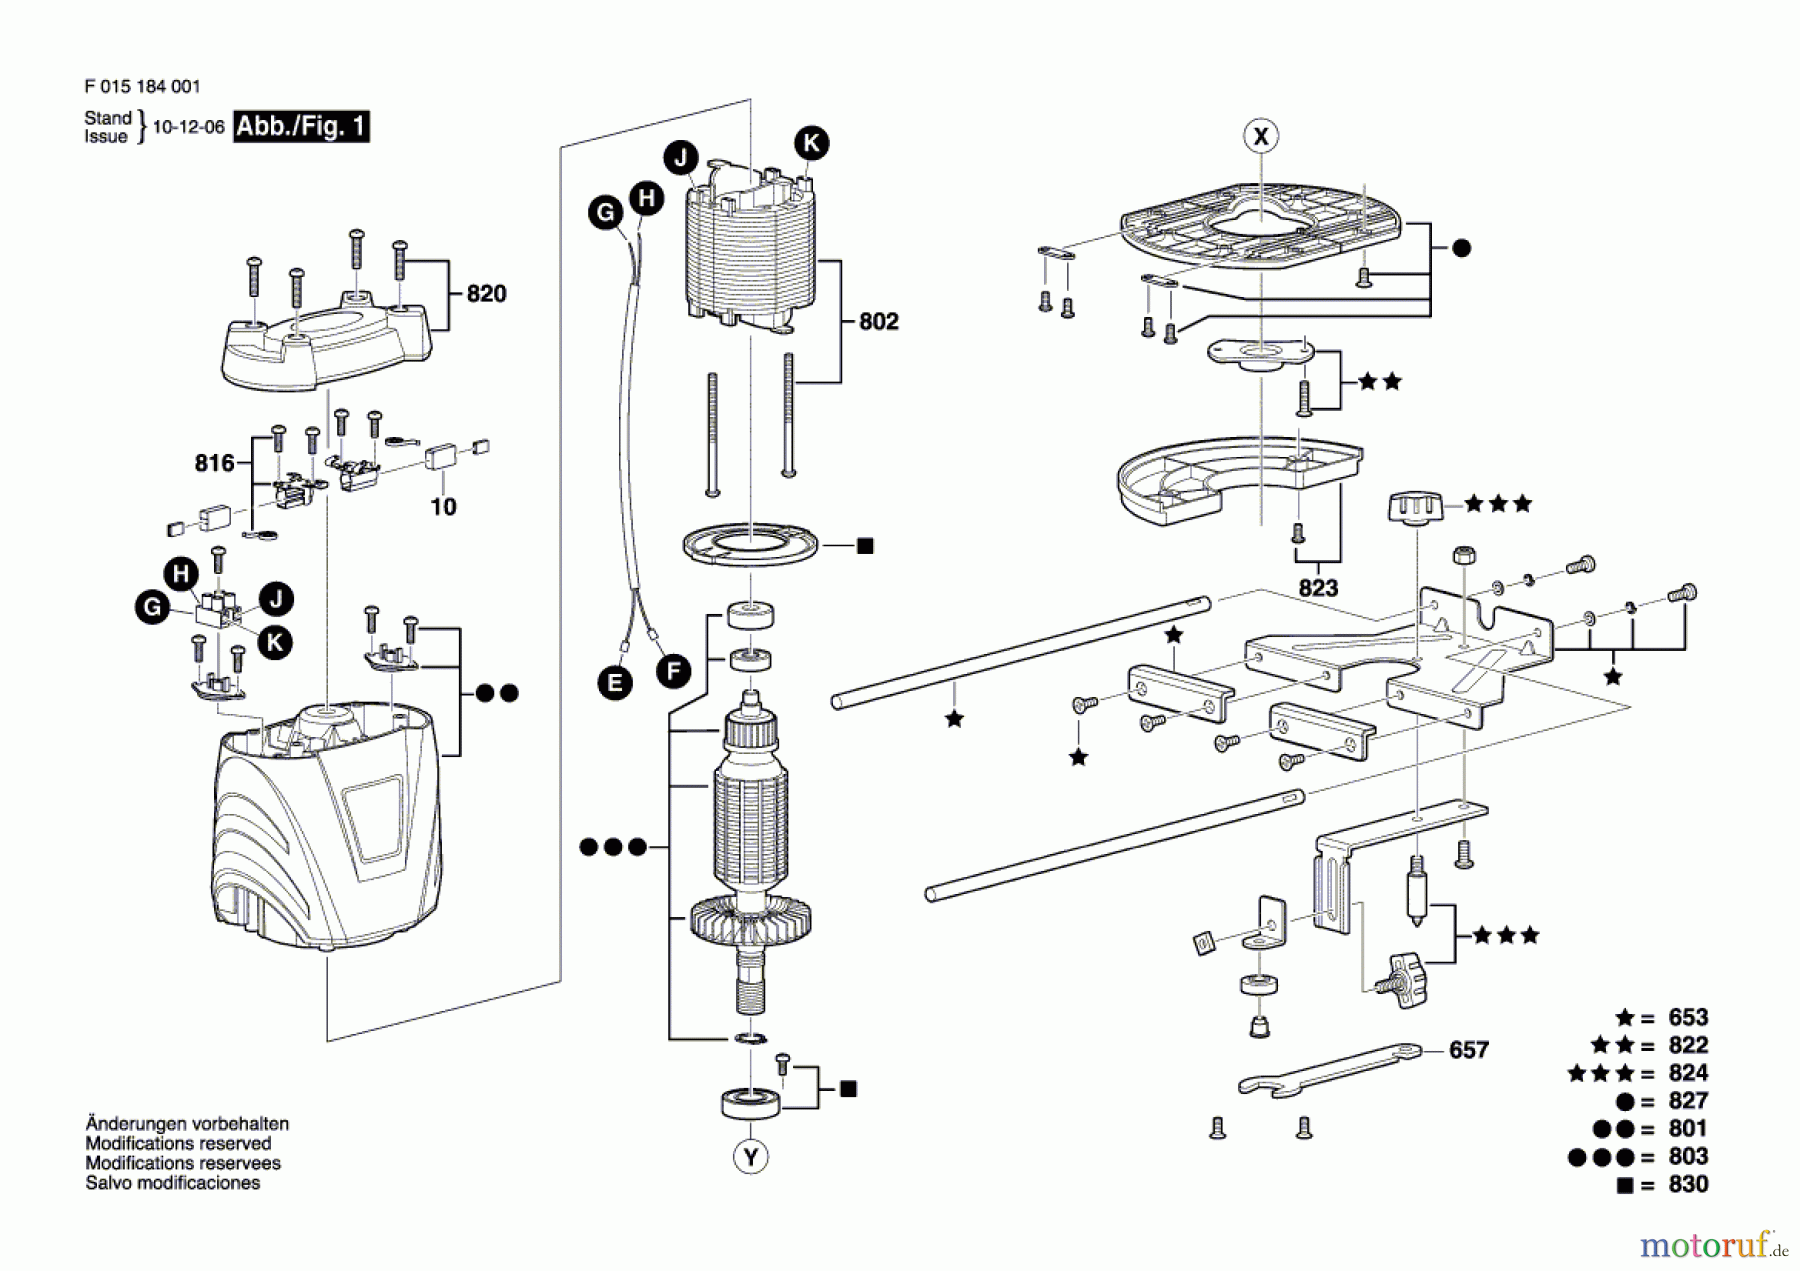  Bosch Werkzeug Oberfräse 1840 Seite 1